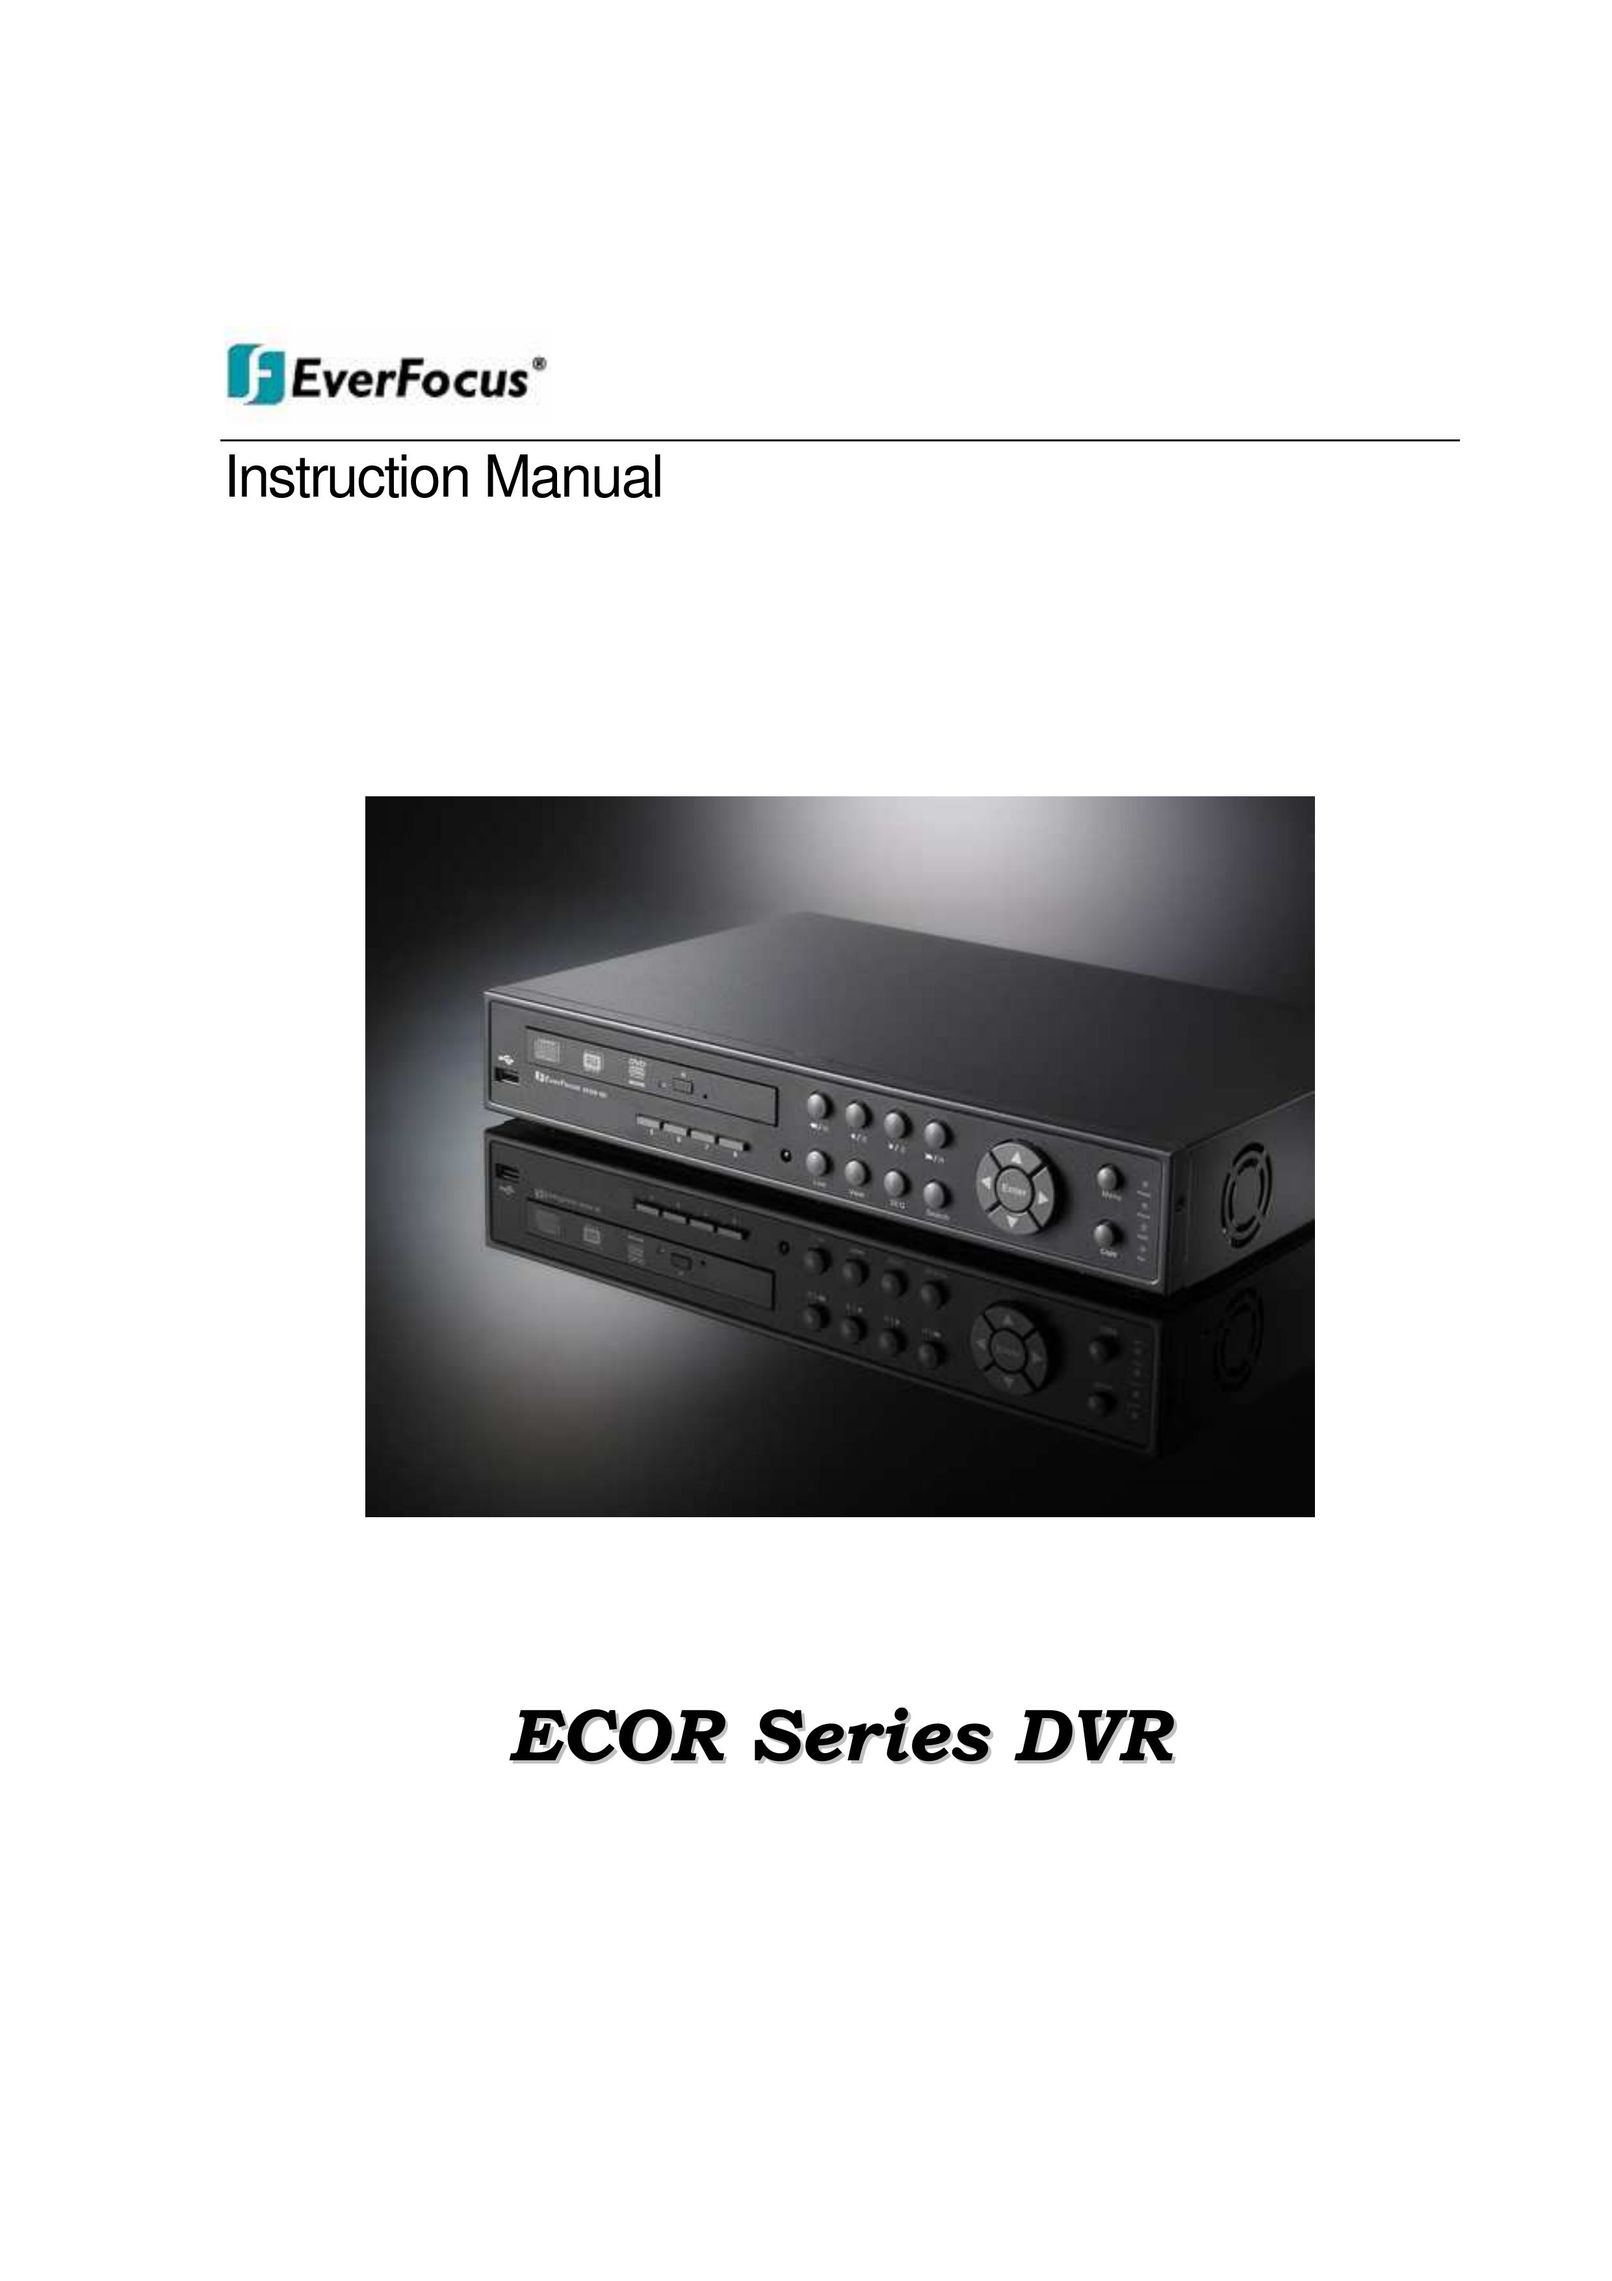 EverFocus ECOR 8 DVR User Manual